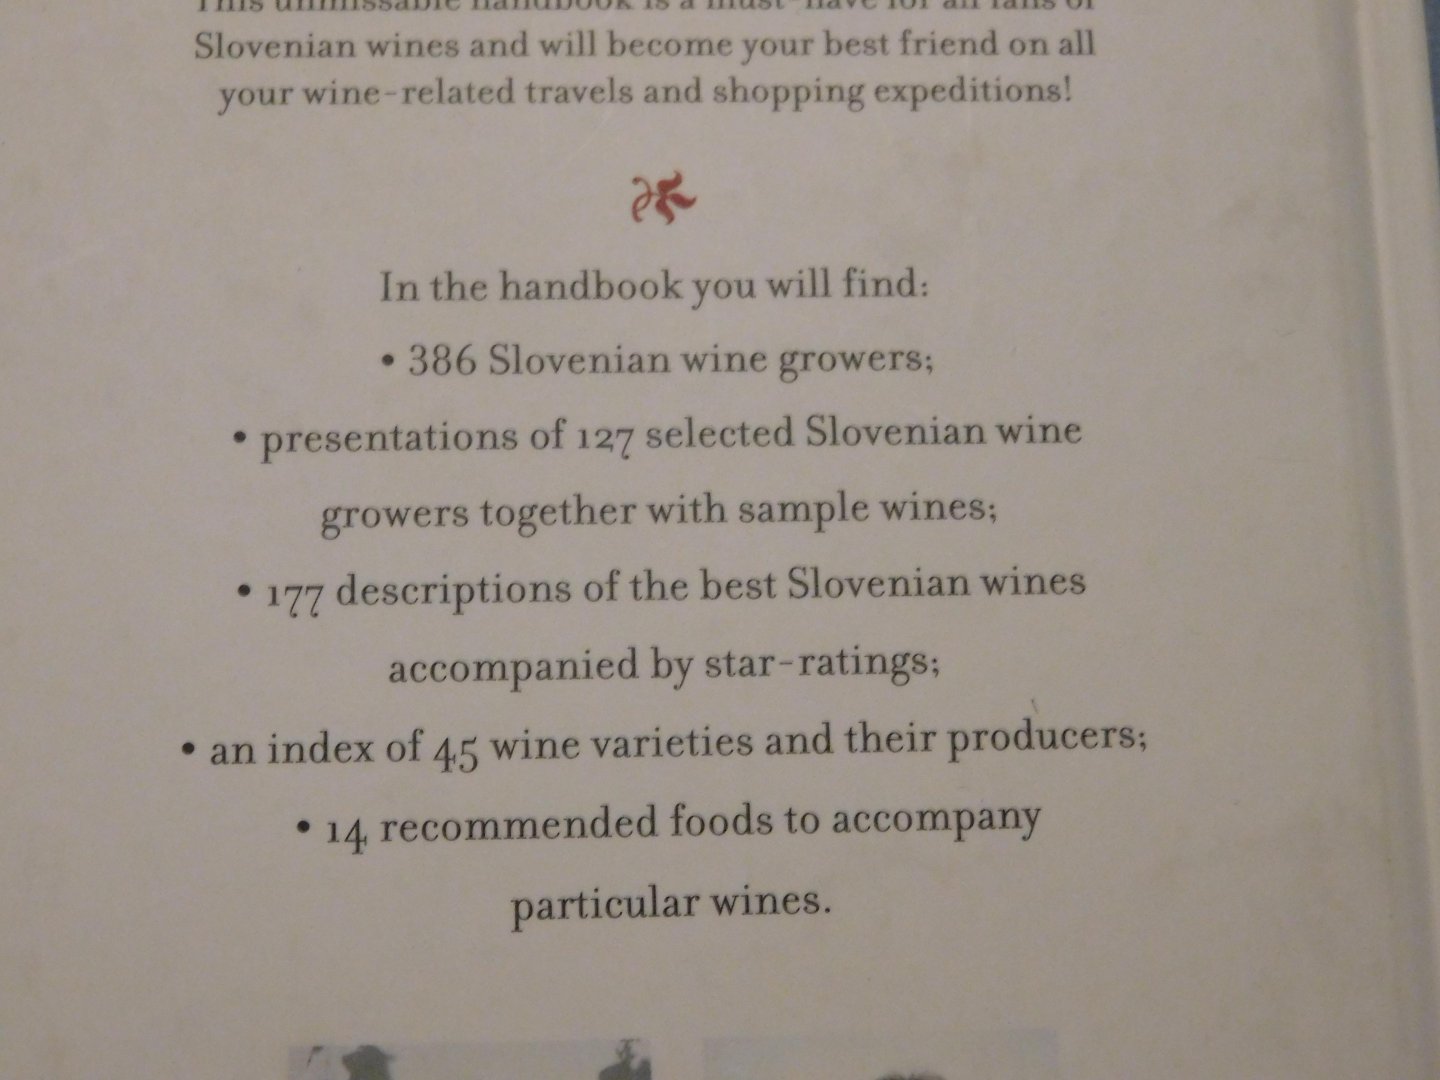 Nemanie - Wines of Slovenia